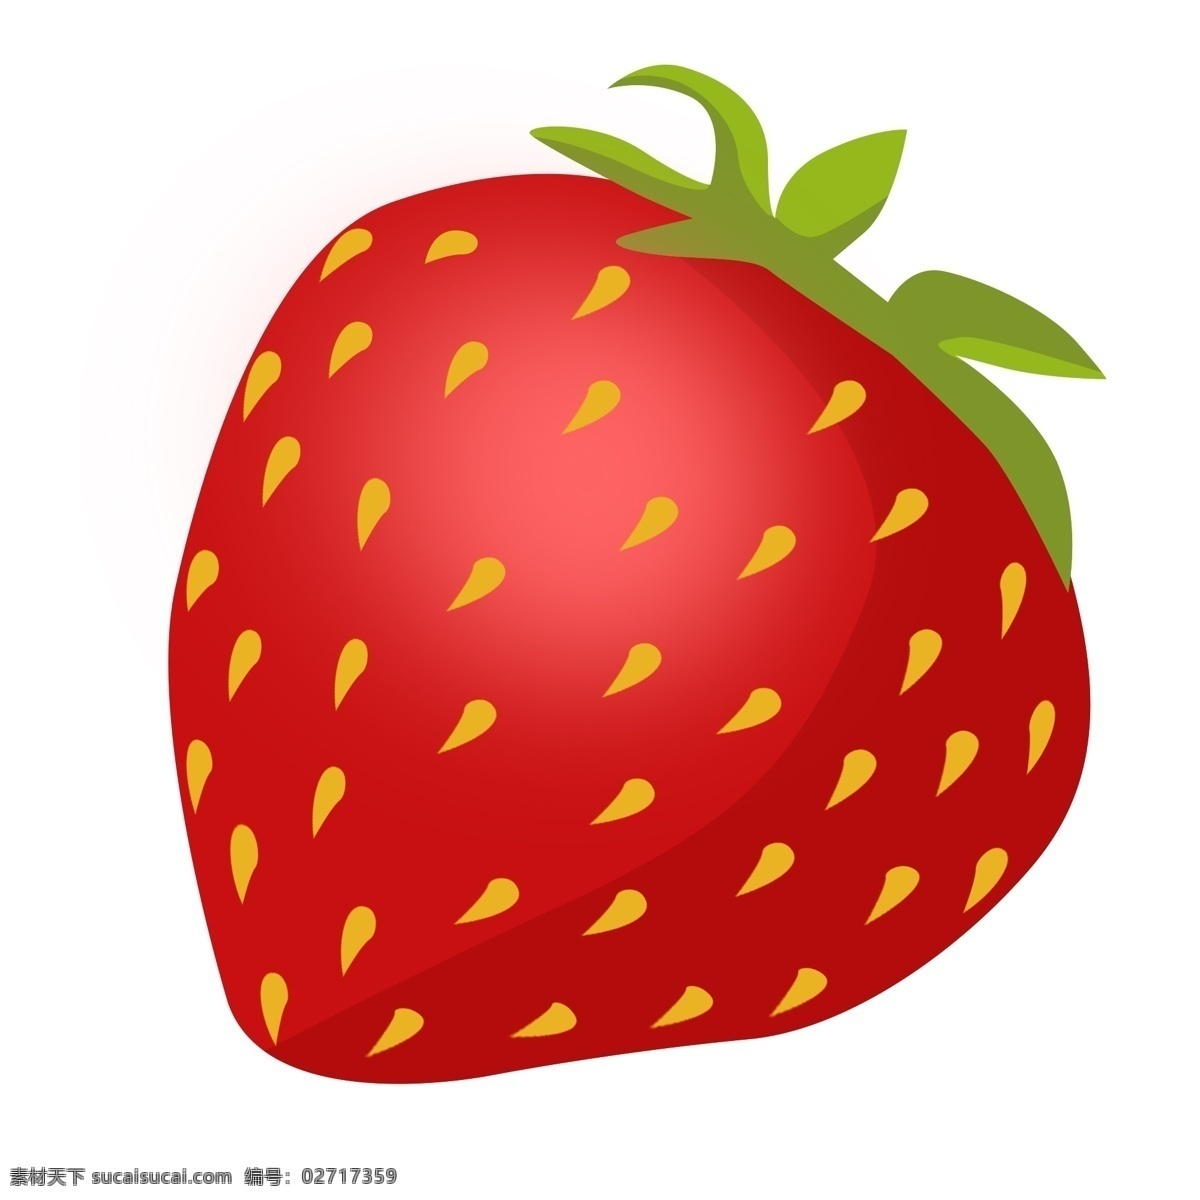 彩色 草莓 食物 元素 美食 水果 吃的 种子 光泽 质感 装饰 叶子 味道 高光 美味 热带水果